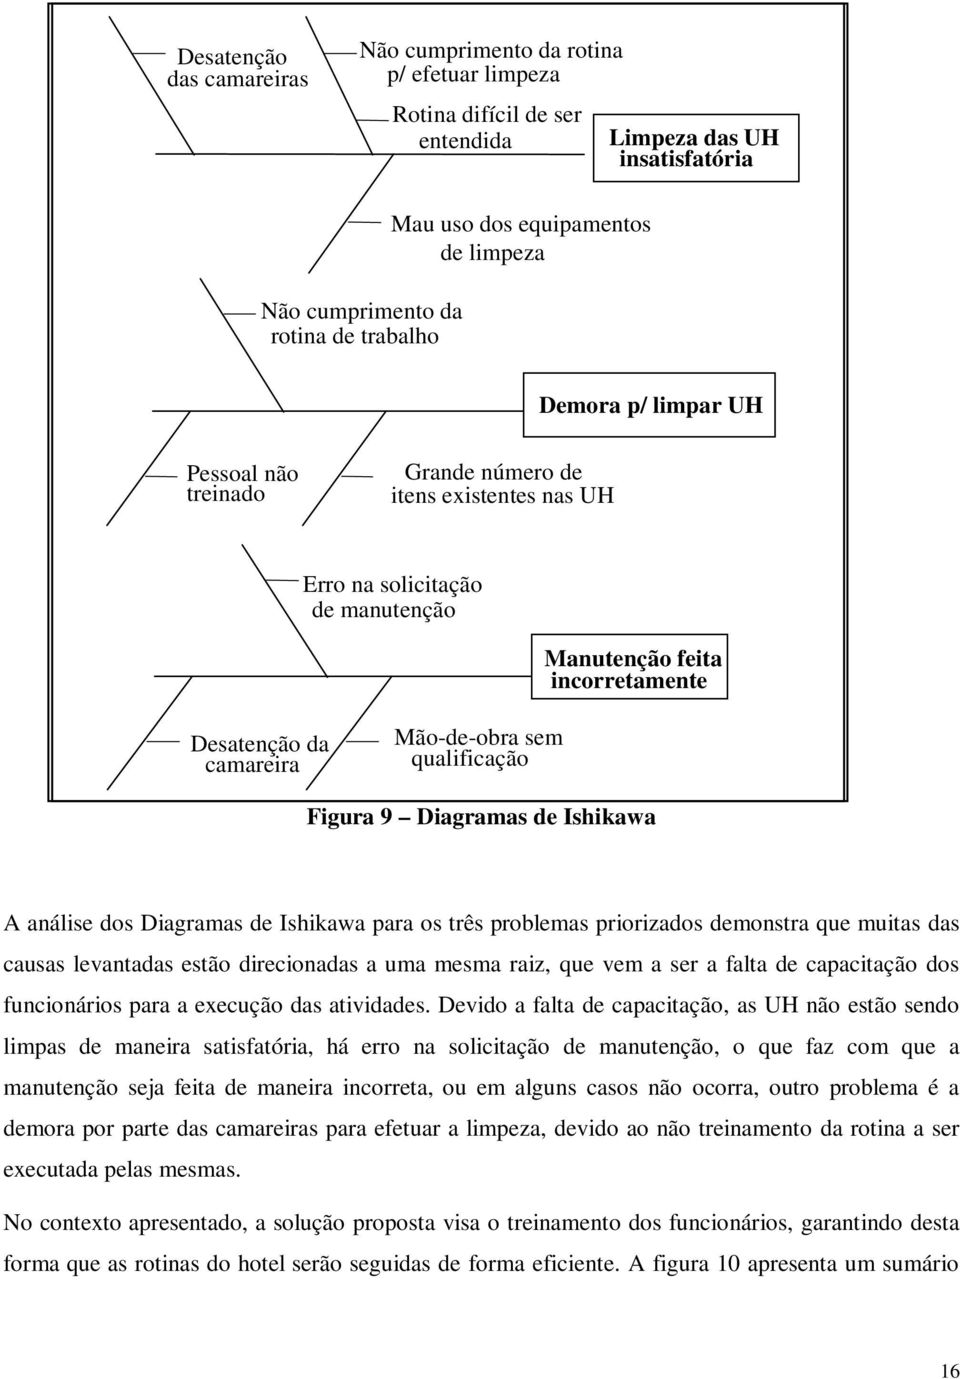 qualificação Figura 9 Diagramas de Ishikawa A análise dos Diagramas de Ishikawa para os três problemas priorizados demonstra que muitas das causas levantadas estão direcionadas a uma mesma raiz, que